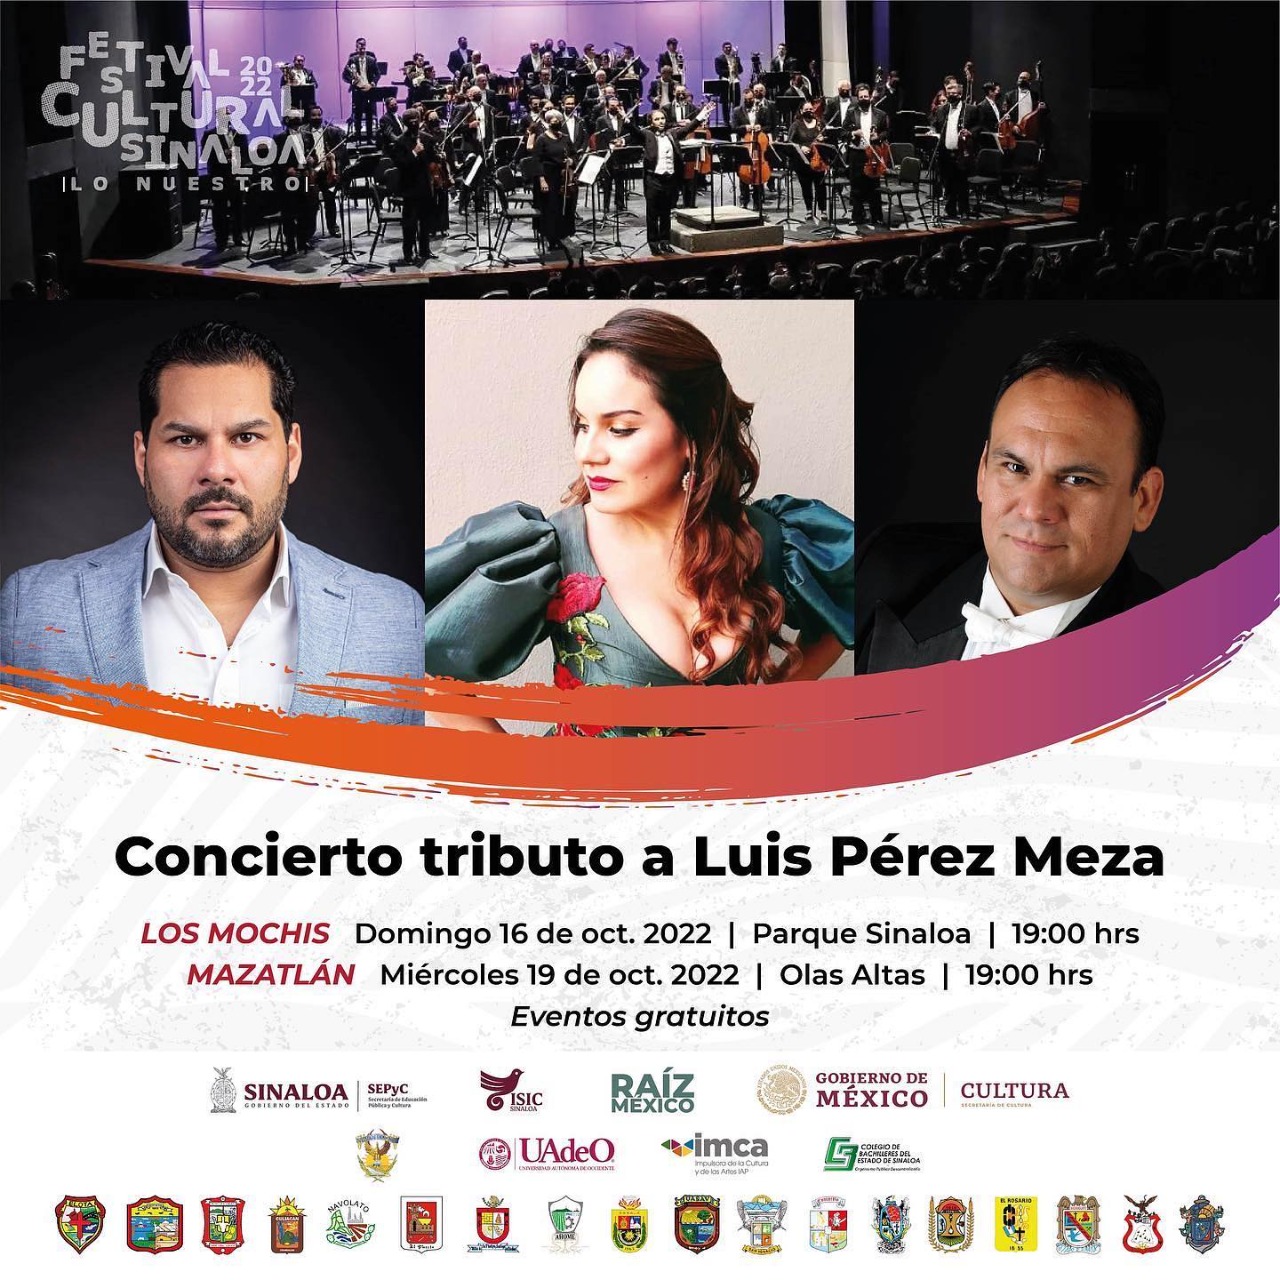 Concierto Tributo a Luis Pérez Meza, este miércoles 19 de octubre en Olas Altas